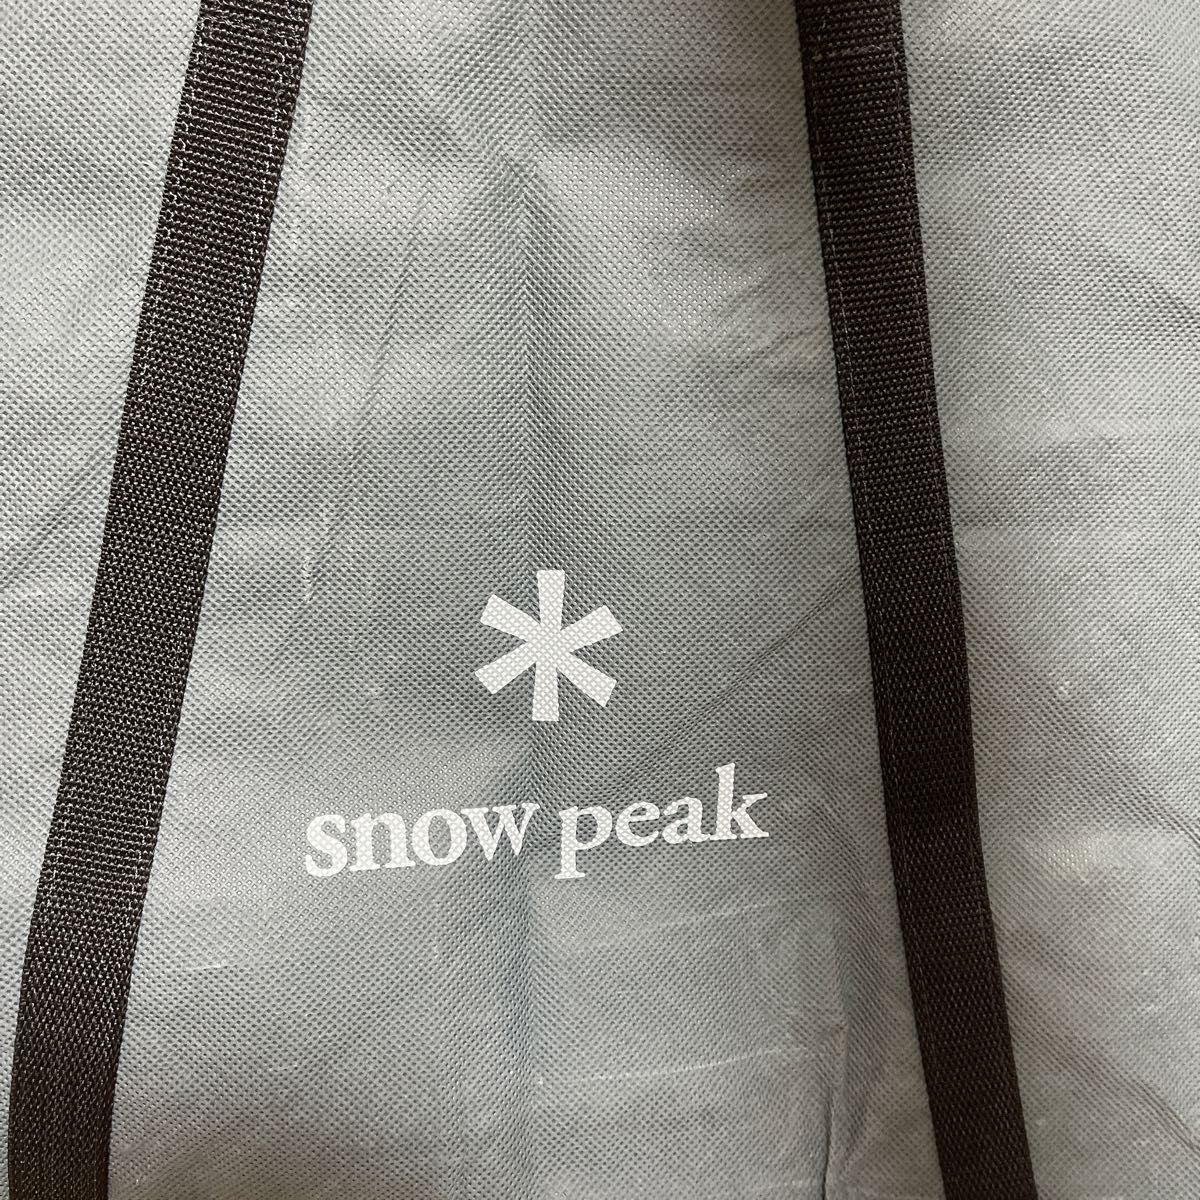 スノーピーク　テーブル　収納バック アウトドア snowpeak マルチパーパストートバッグ